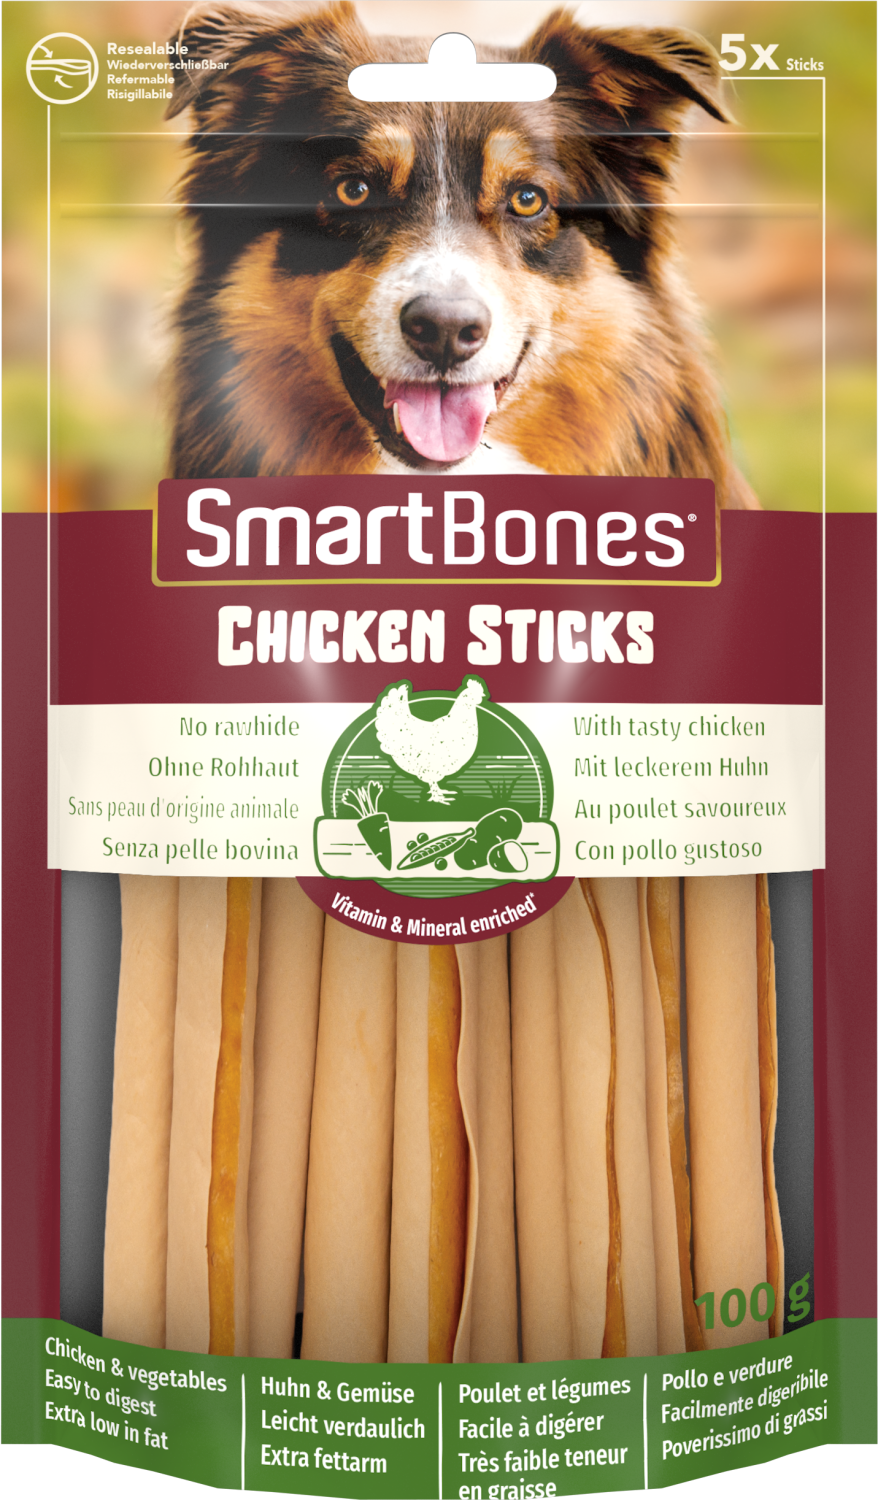 SmartBones Chicken Sticks 5 Pk